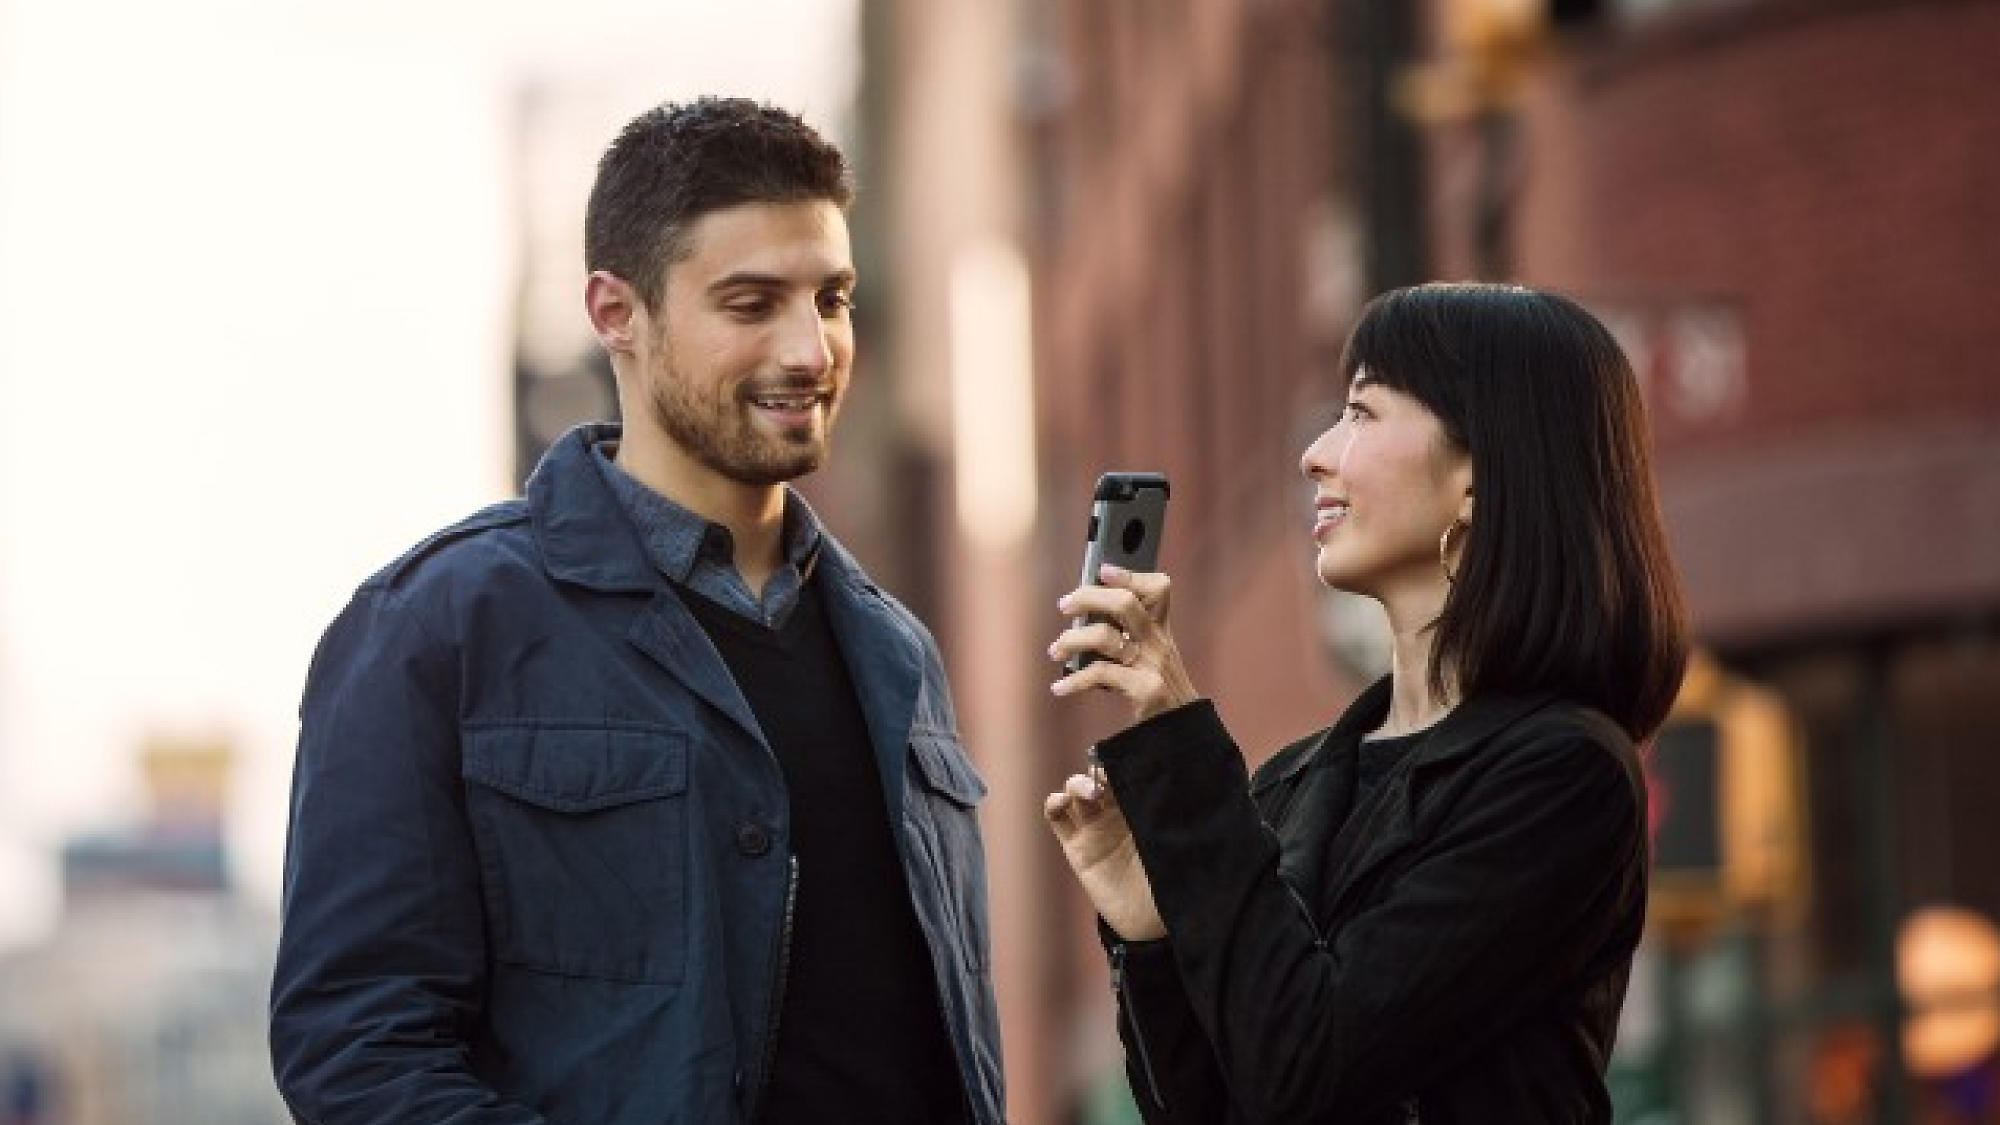 Ženska drži pametni telefon, kaže proti moškemu, medtem ko oba stojita na mestni ulici, se smejita in se pogovarjata.